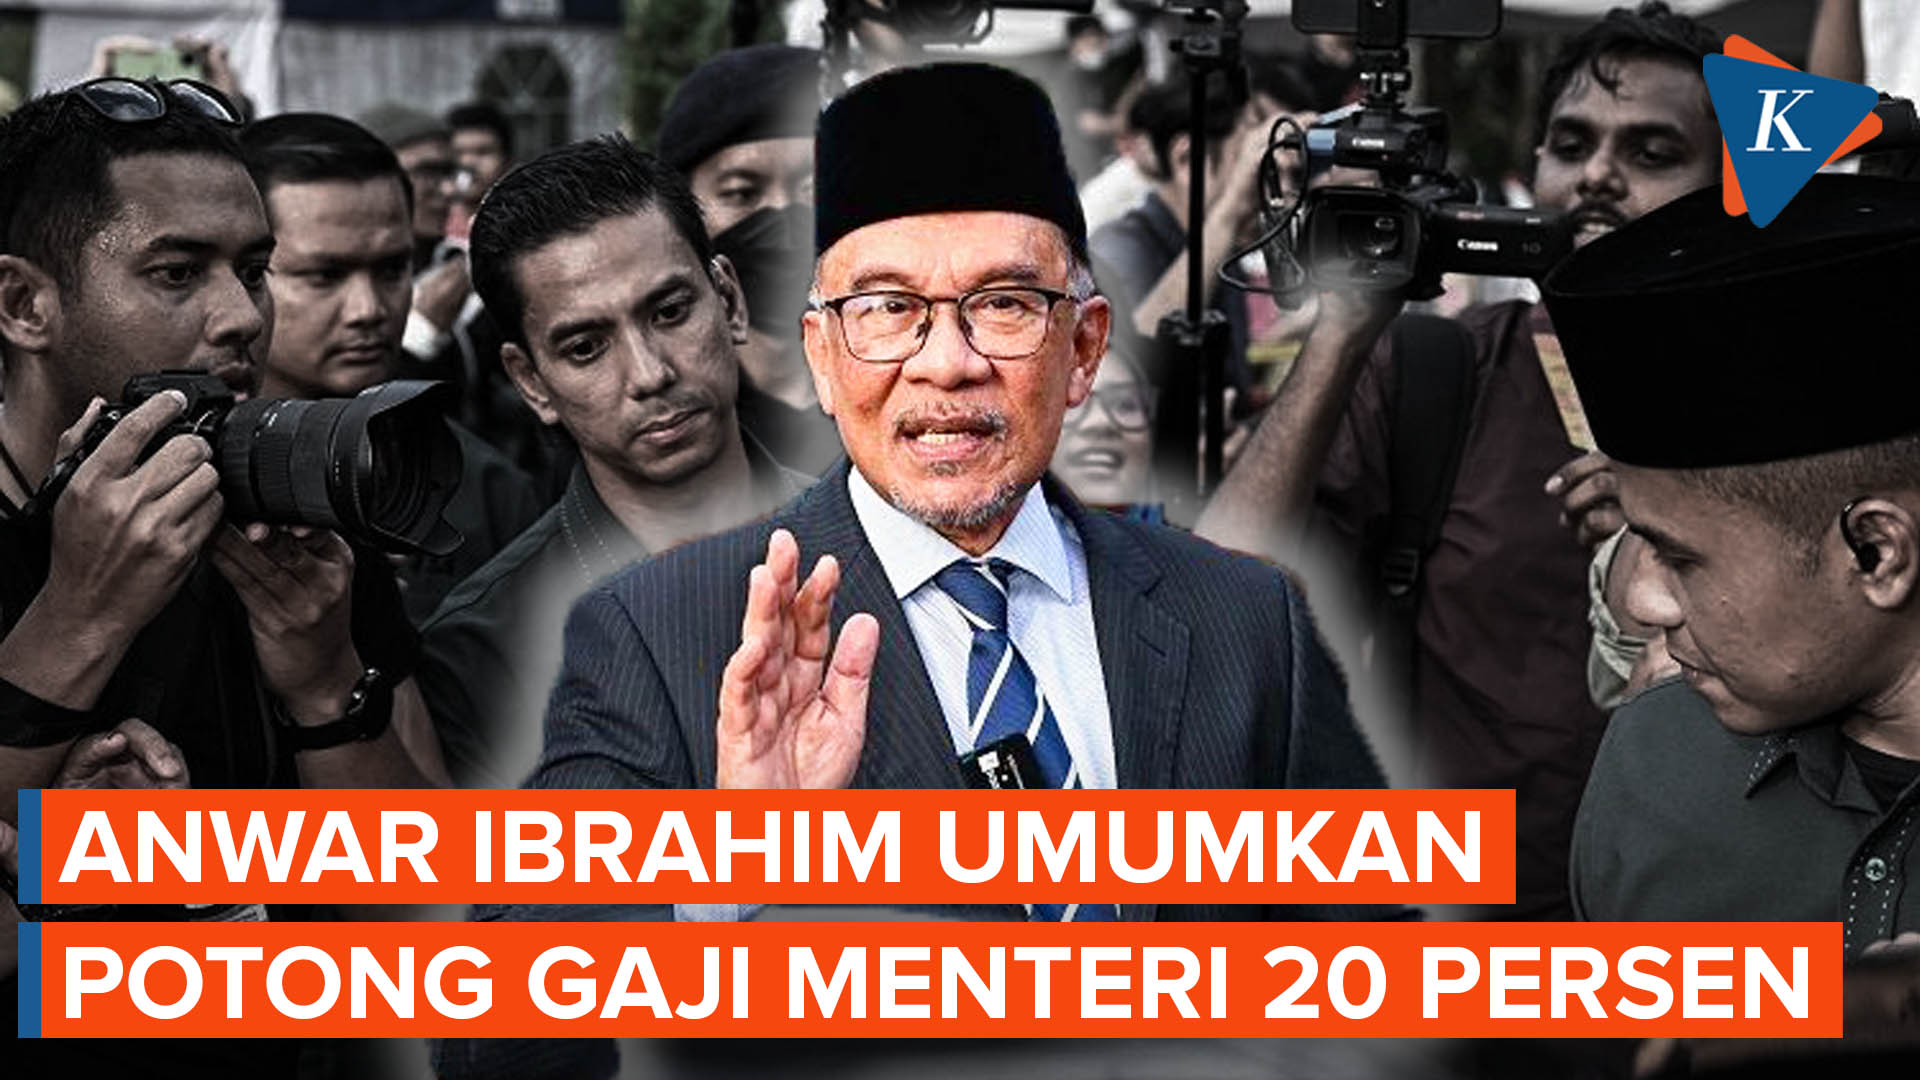 PM Malaysia Anwar Ibrahim Potong Gaji Menterinya 20 Persen demi Pemulihan Ekonomi